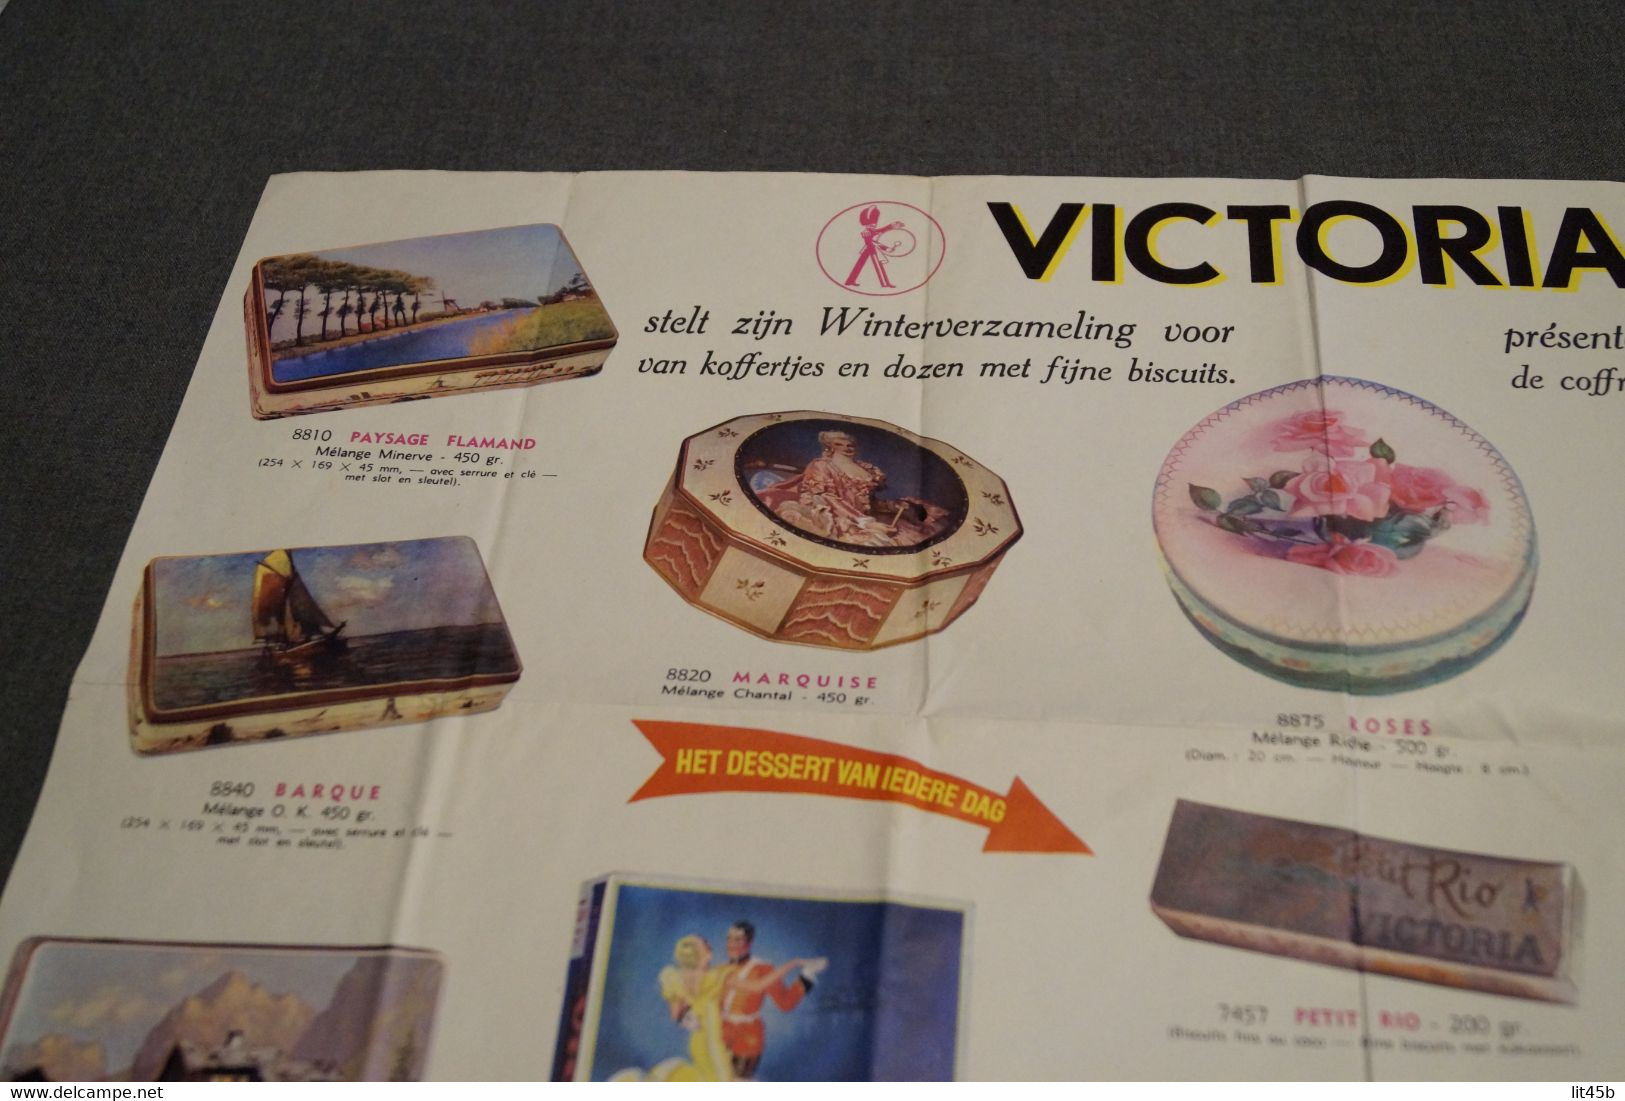 Ancienne publicité Affiche Chocolat Victoria pour magasin,collection,59 Cm. sur 35 Cm.